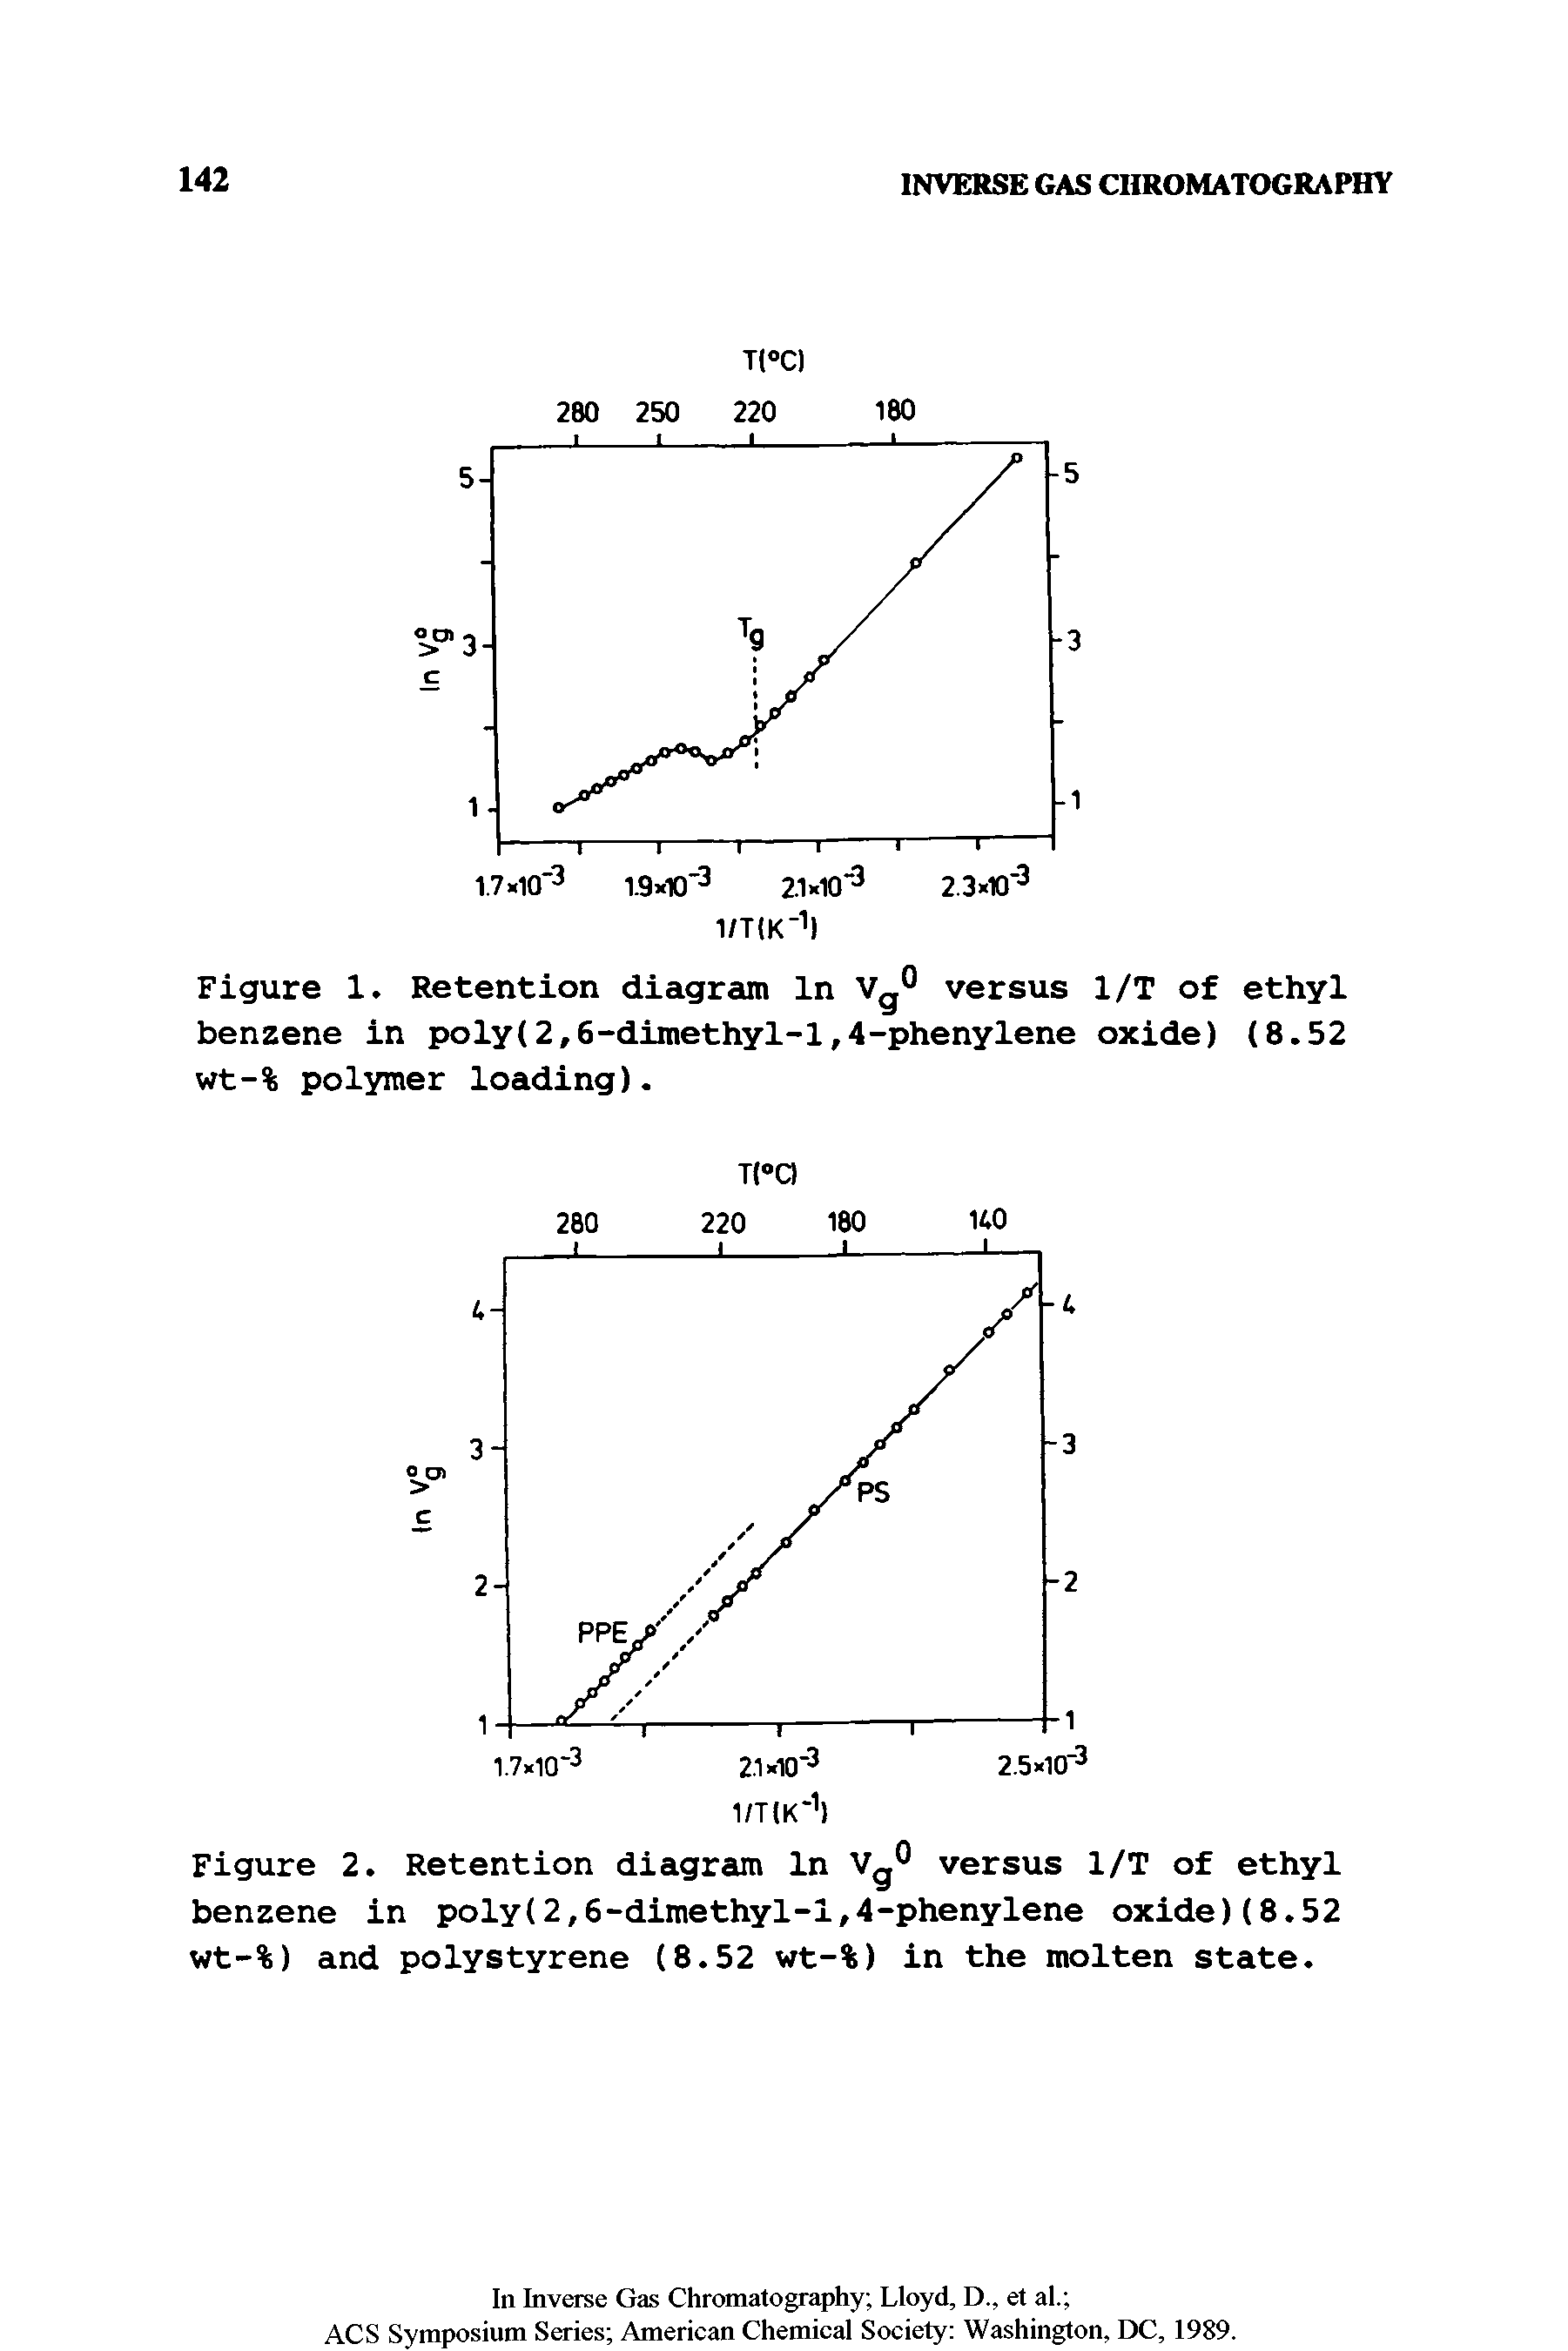 Figure 1. Retention diagram In Vg° versus 1/T of ethyl benzene in poly(2,6-dimethyl-l,4-phenylene oxide) (8.52 wt-% polymer loading).